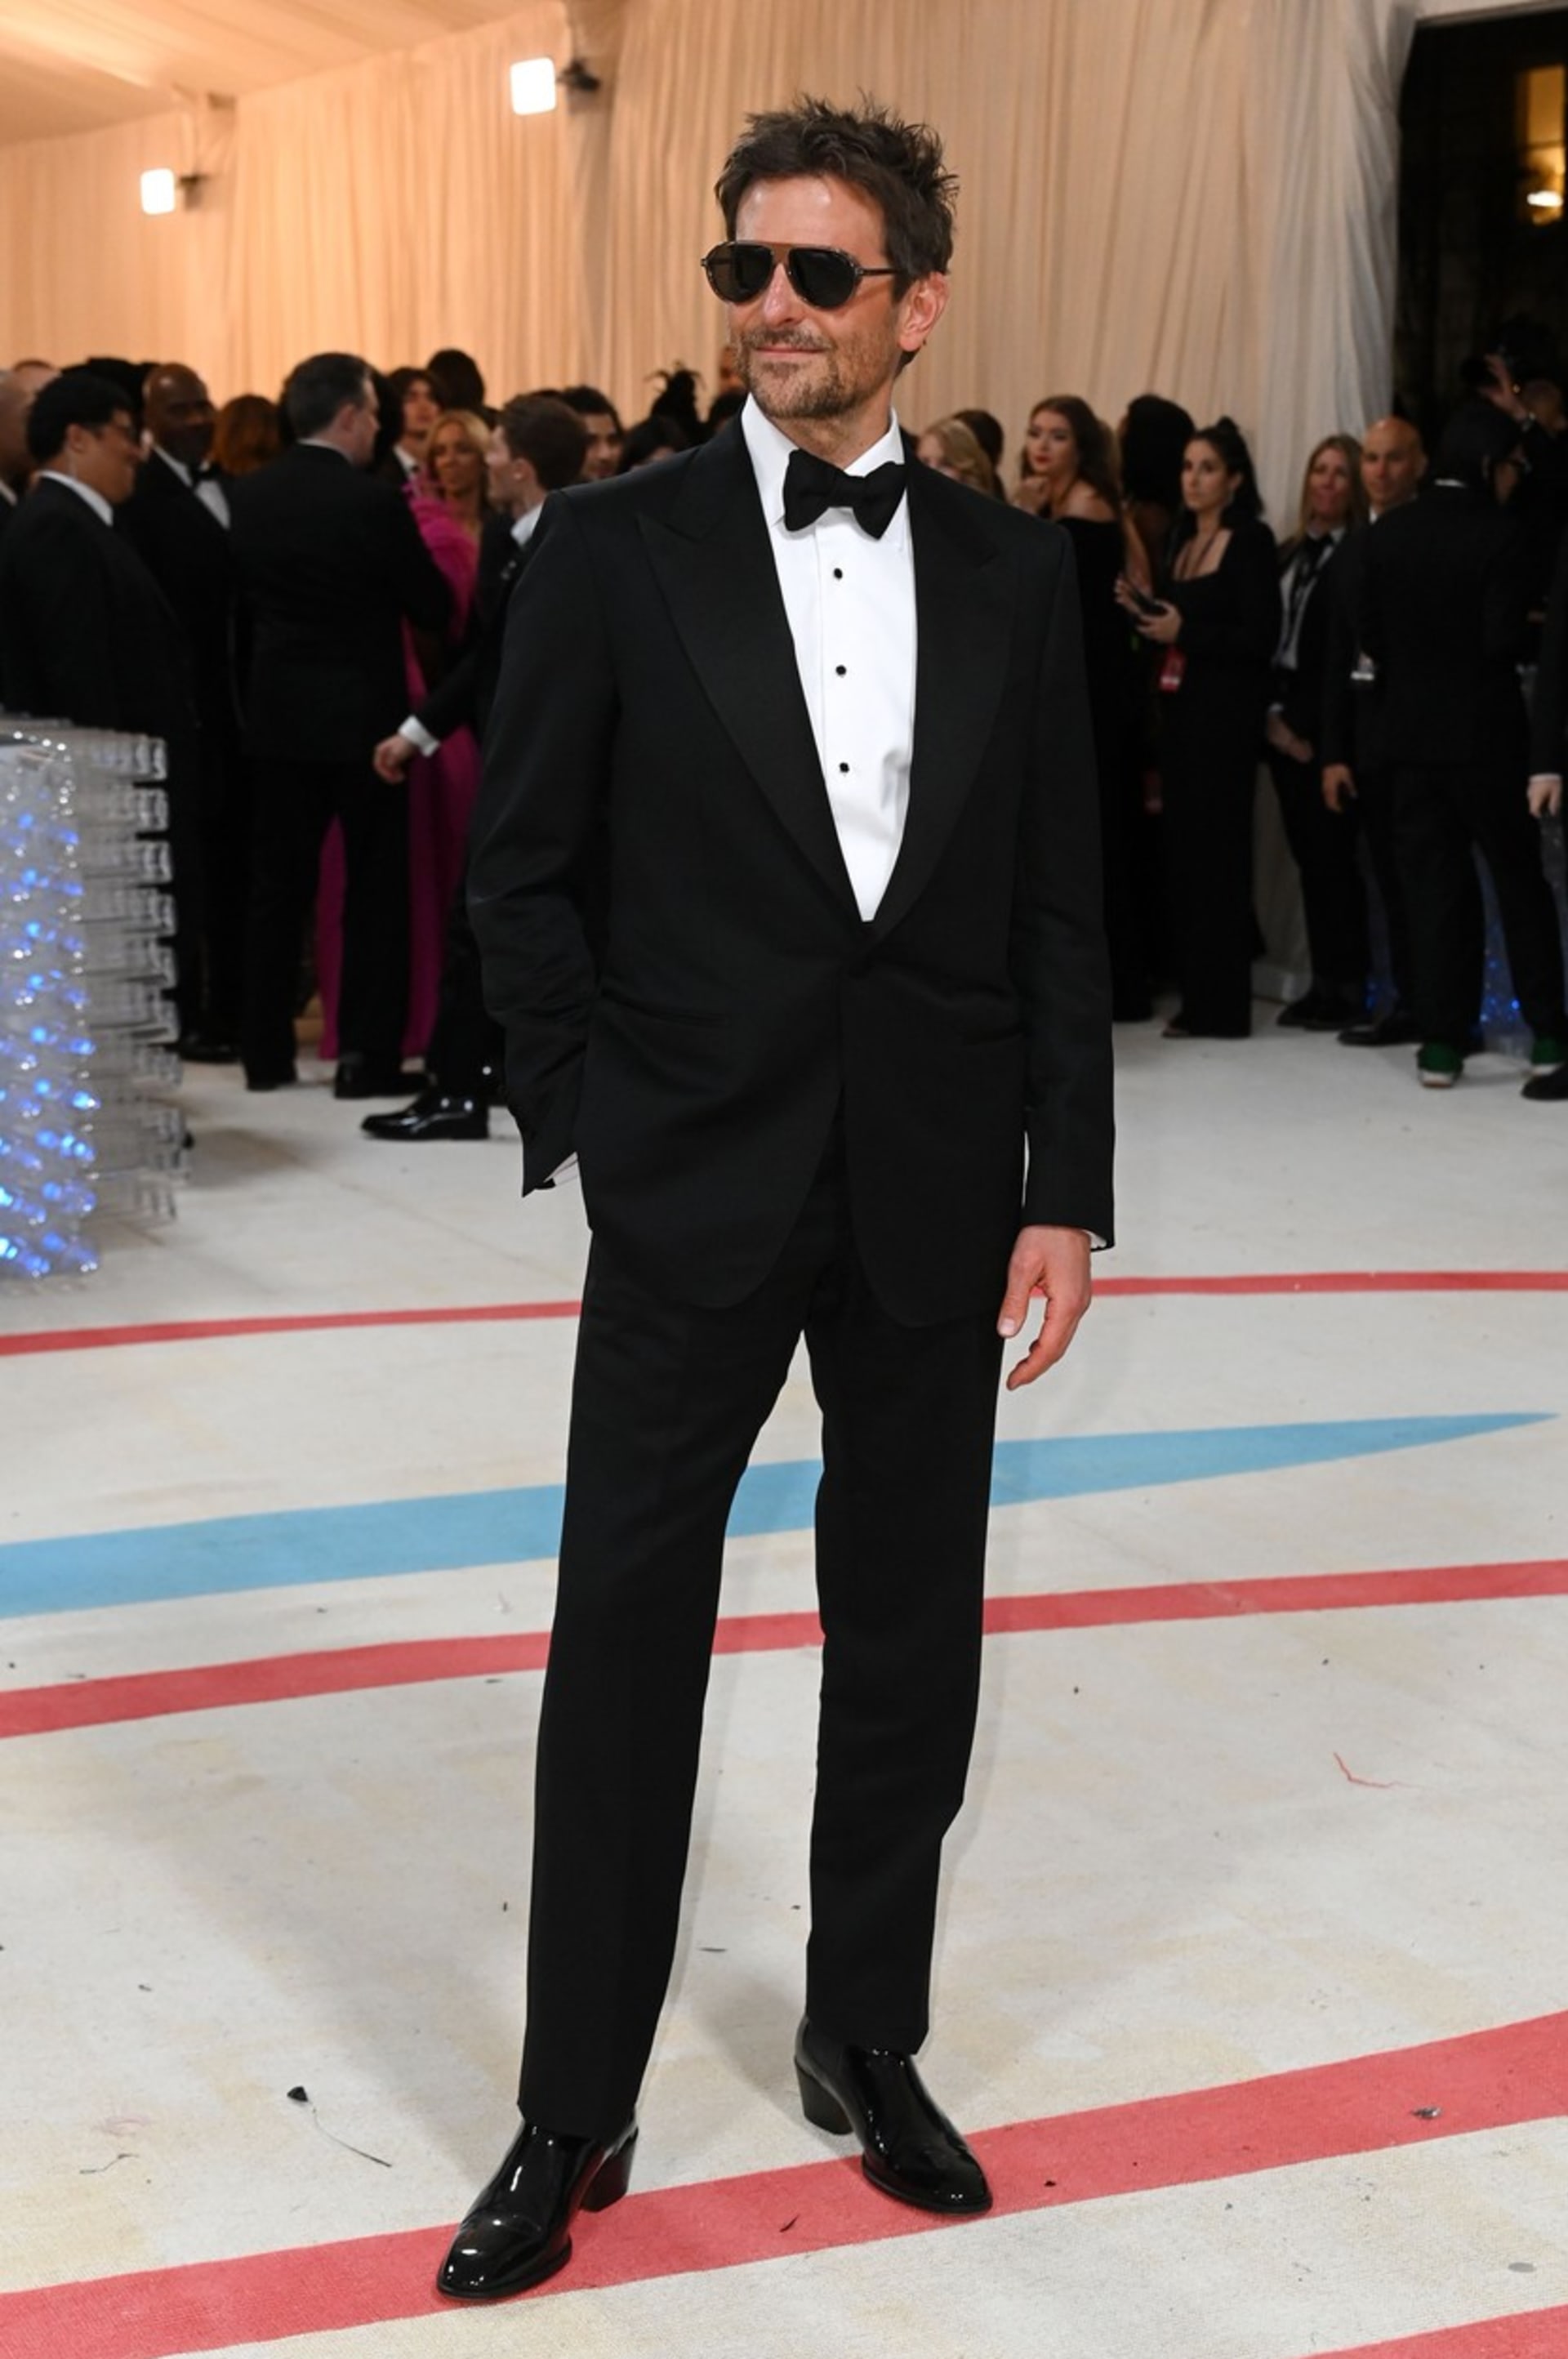 Herec Bradley Cooper zvolil jednoduchou cestu elegance.